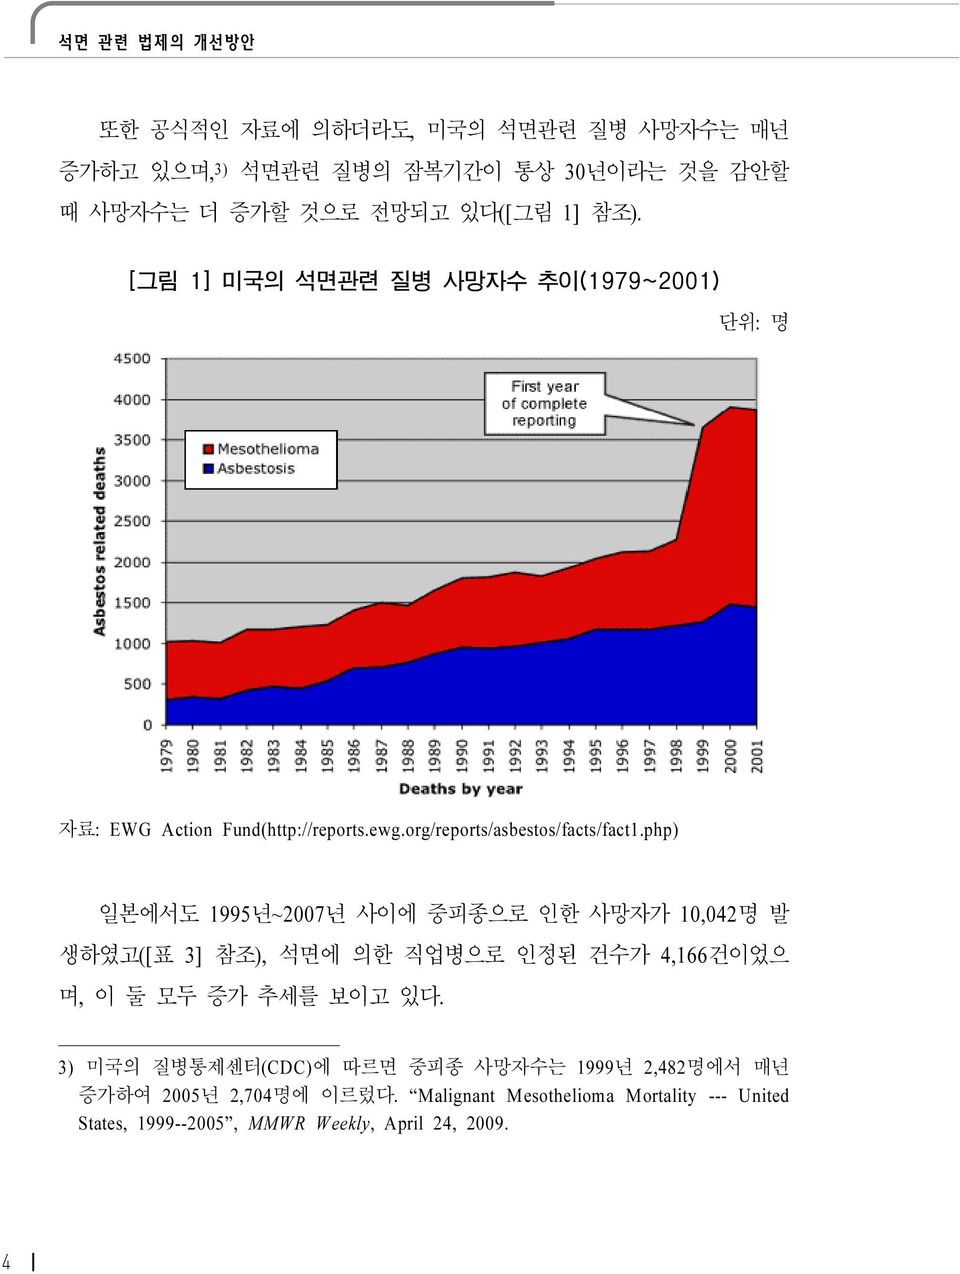 php) 일본에서도 1995년~2007년 사이에 중피종으로 인한 사망자가 10,042명 발 생하였고([표 3] 참조), 석면에 의한 직업병으로 인정된 건수가 4,166건이었으 며, 이 둘 모두 증가 추세를 보이고 있다.